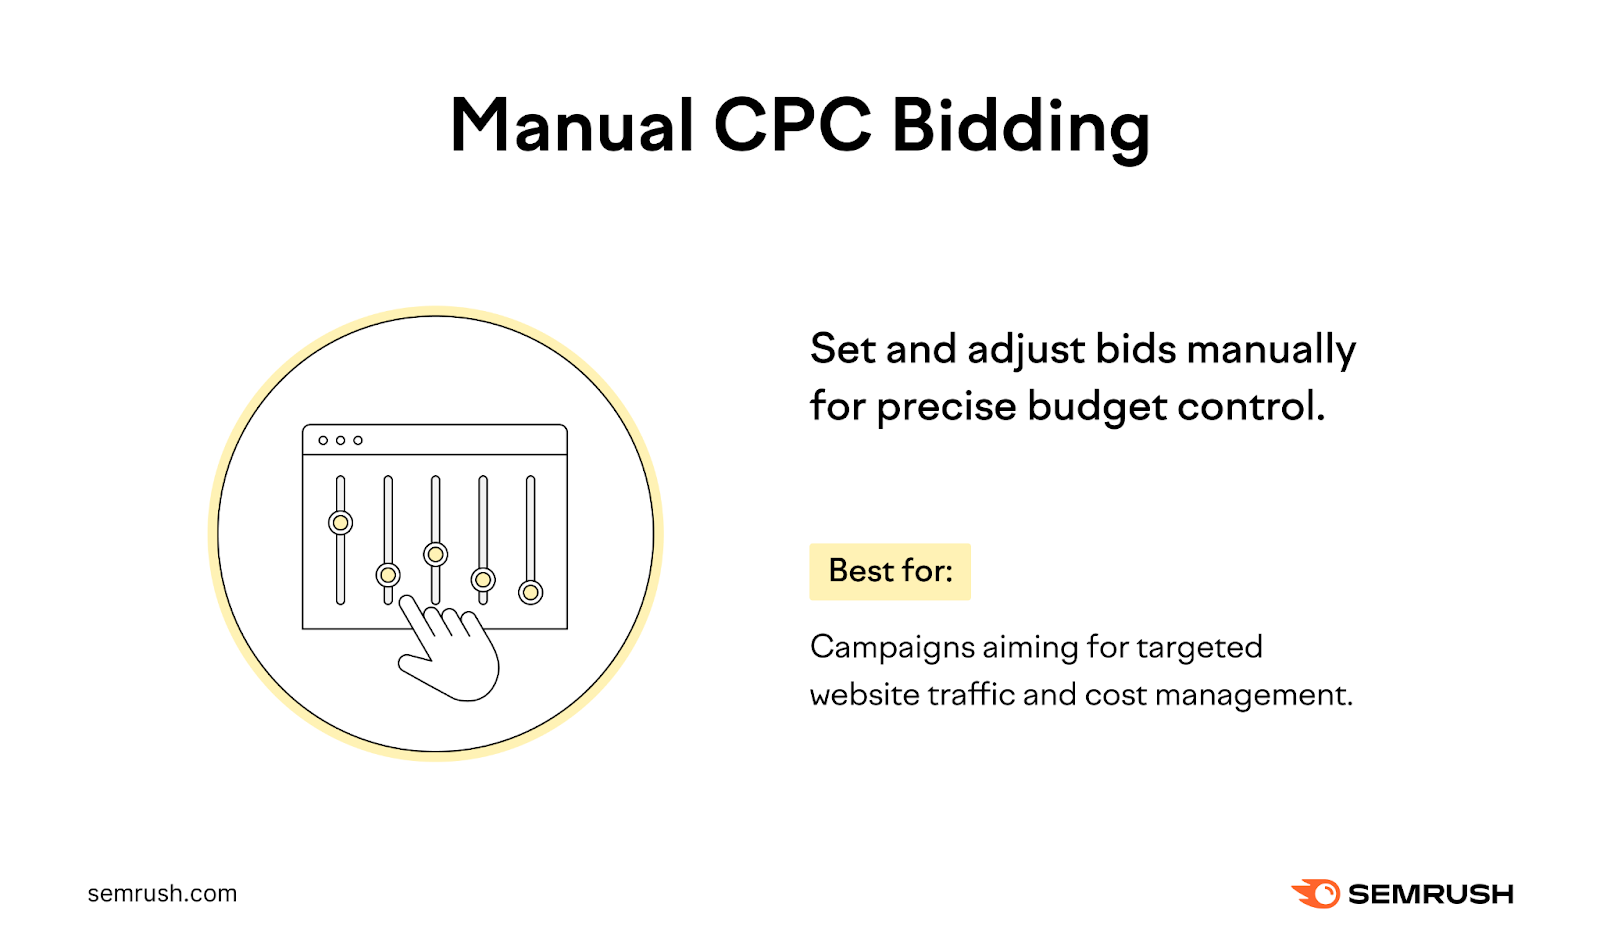 Manual Cost-per-Click (CPC) Bidding